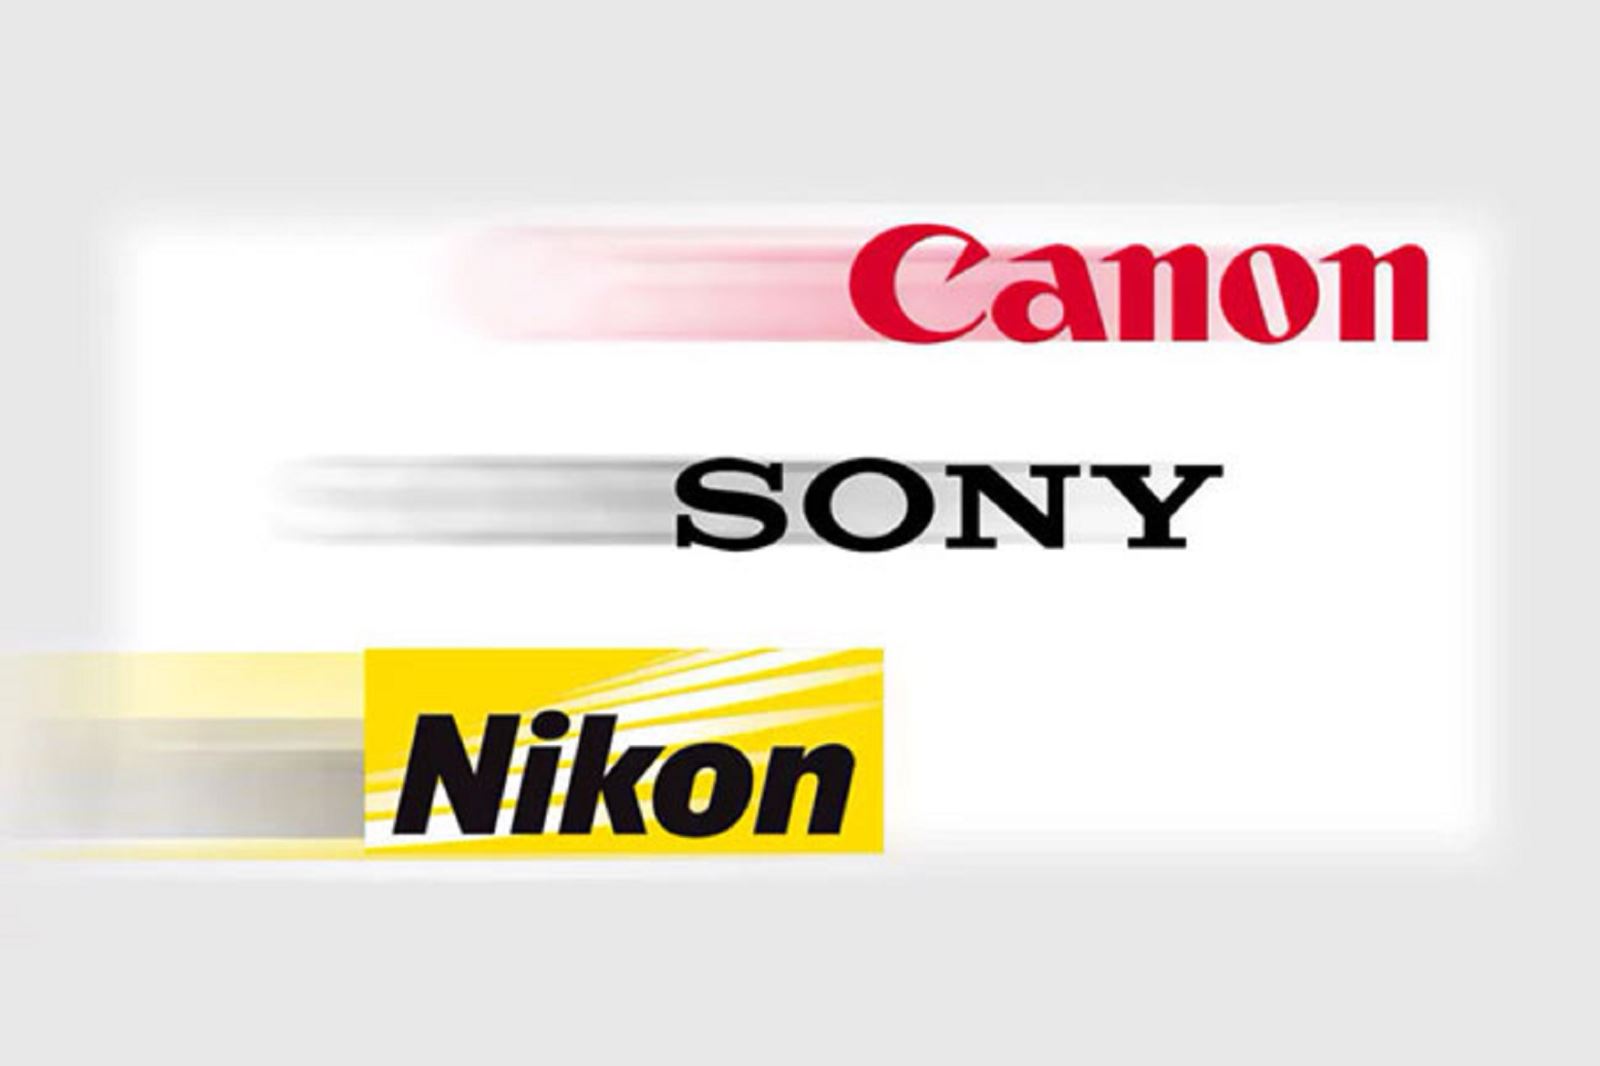 Sony chiếm vị trí thứ 2 trên thị trường máy ảnh, đẩy Nikon xuống thứ 3